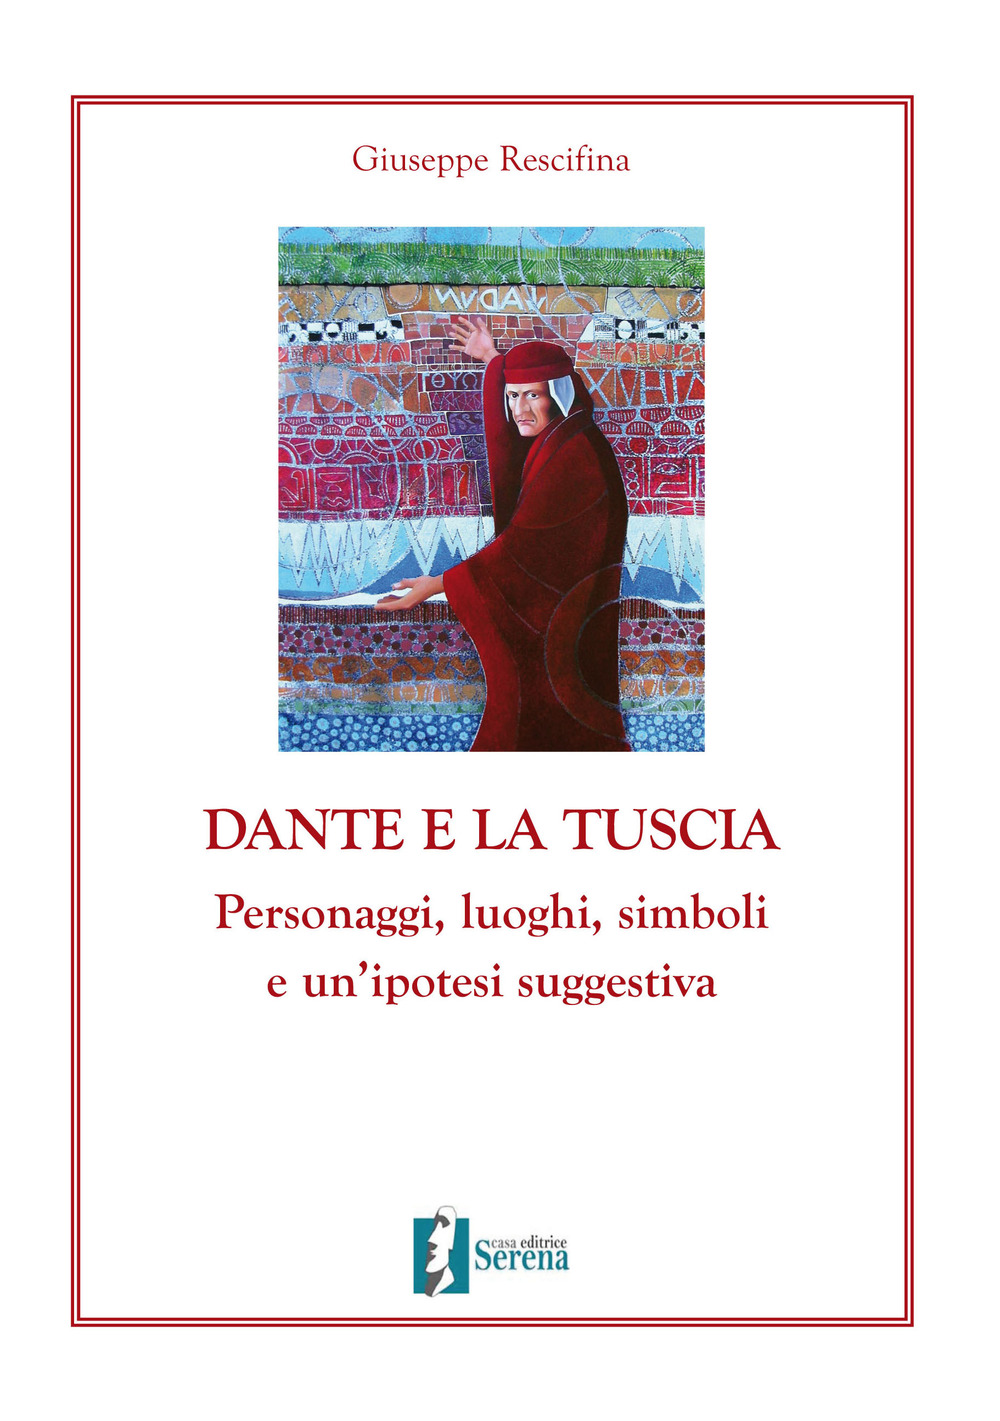 Dante e la Tuscia. Personaggi, luoghi, simboli e un'ipotesi suggestiva